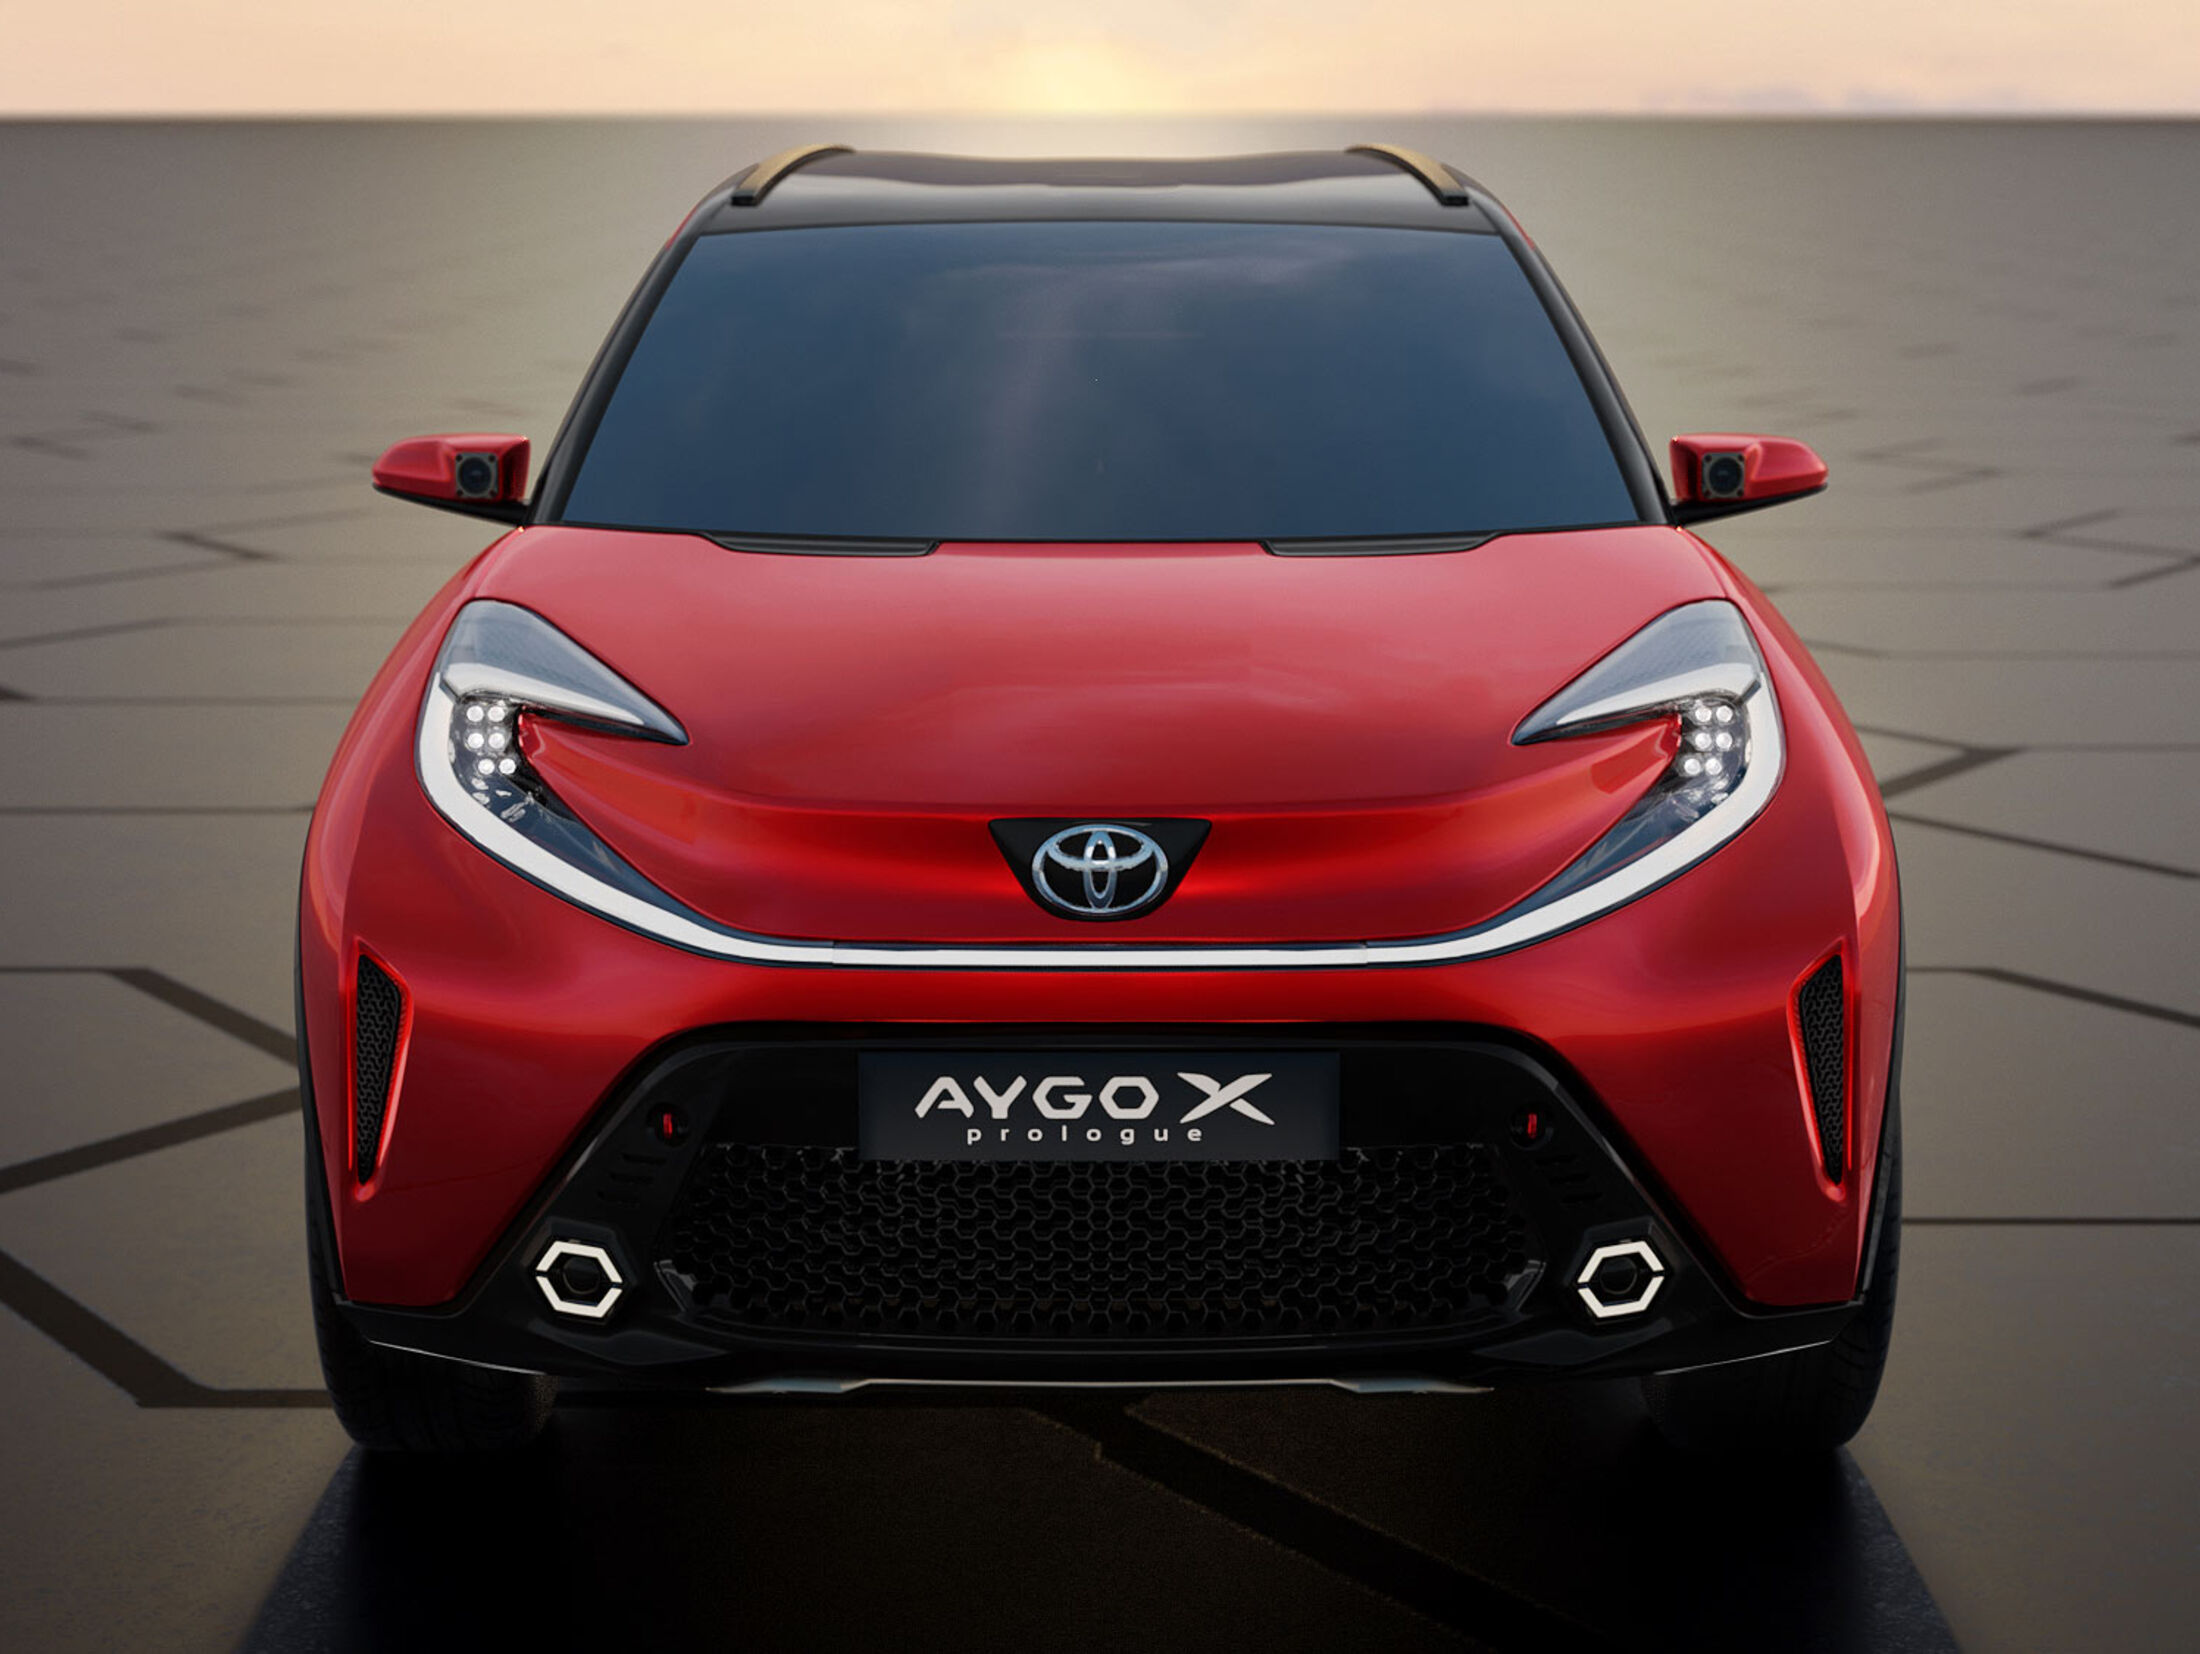 AYGO X ein außergewöhnliches Crossover-Fahrzeug